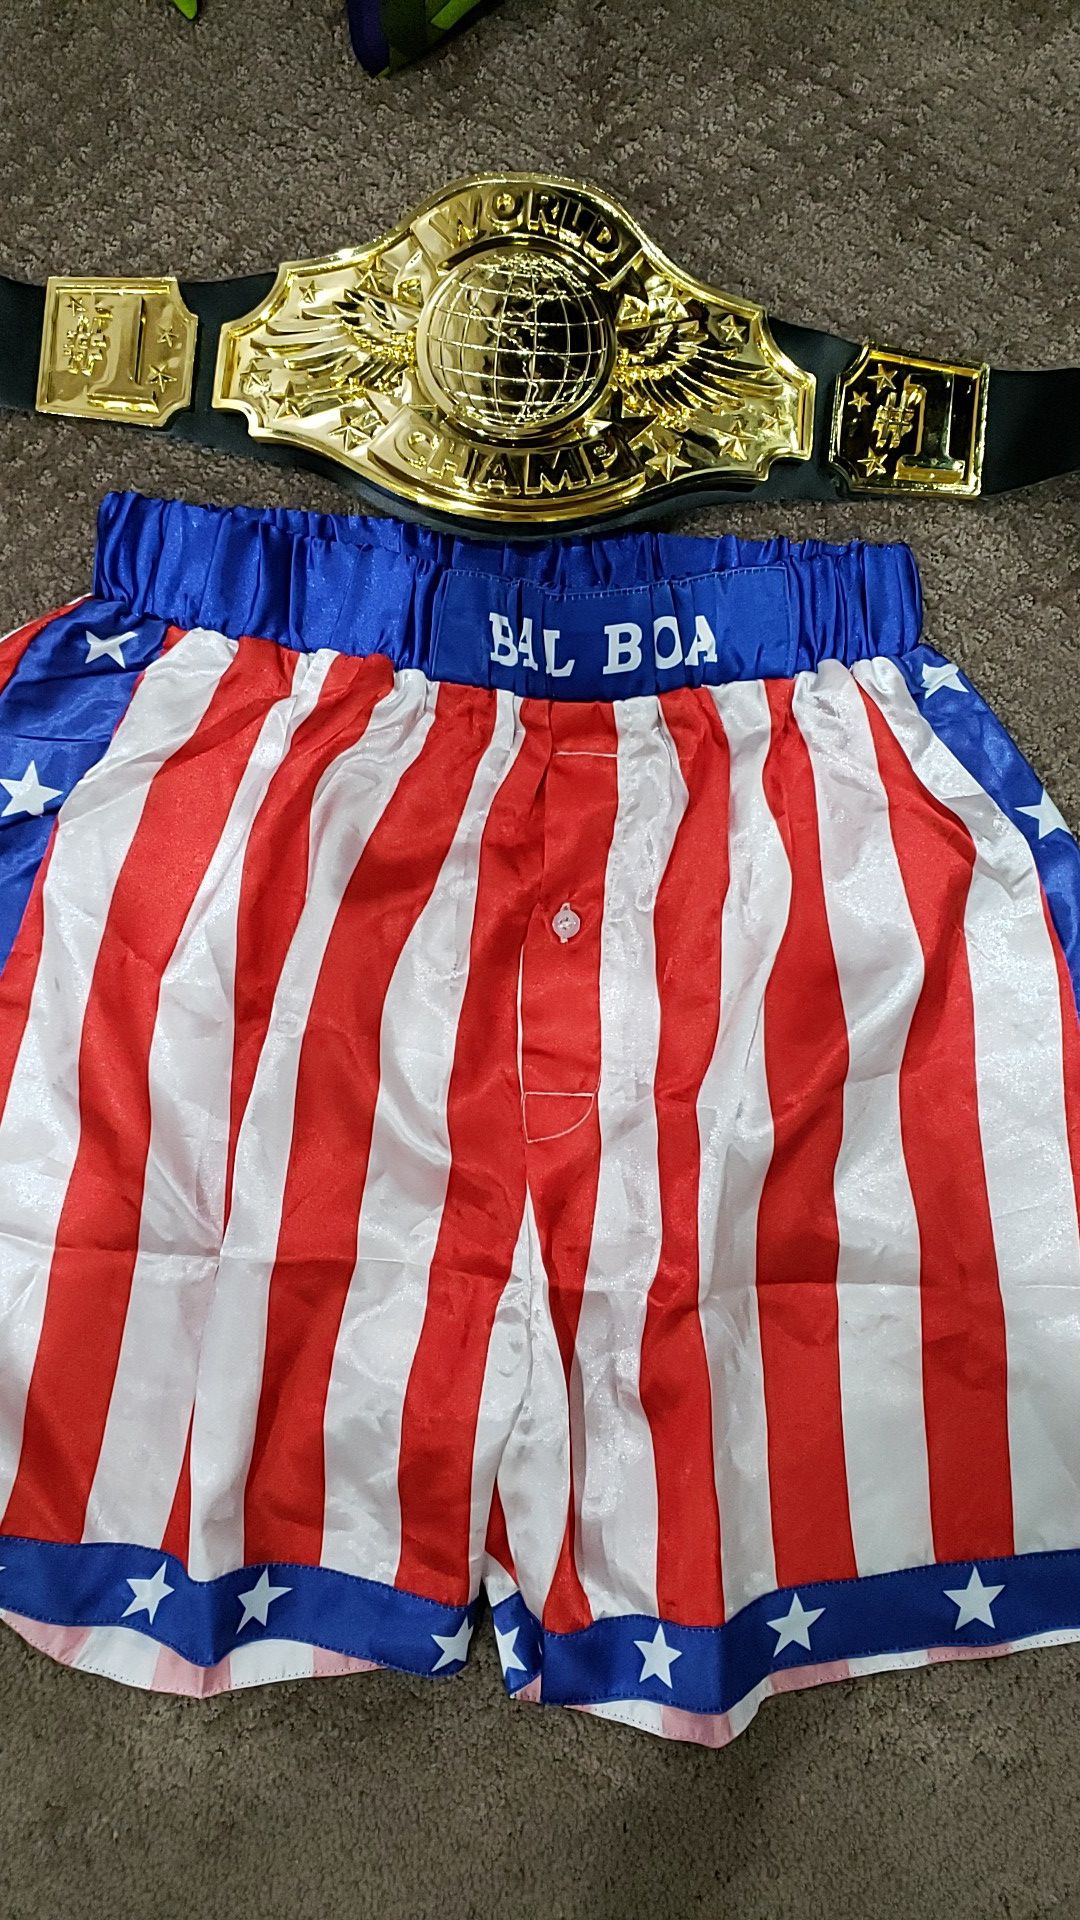 Balboa shorts and belt